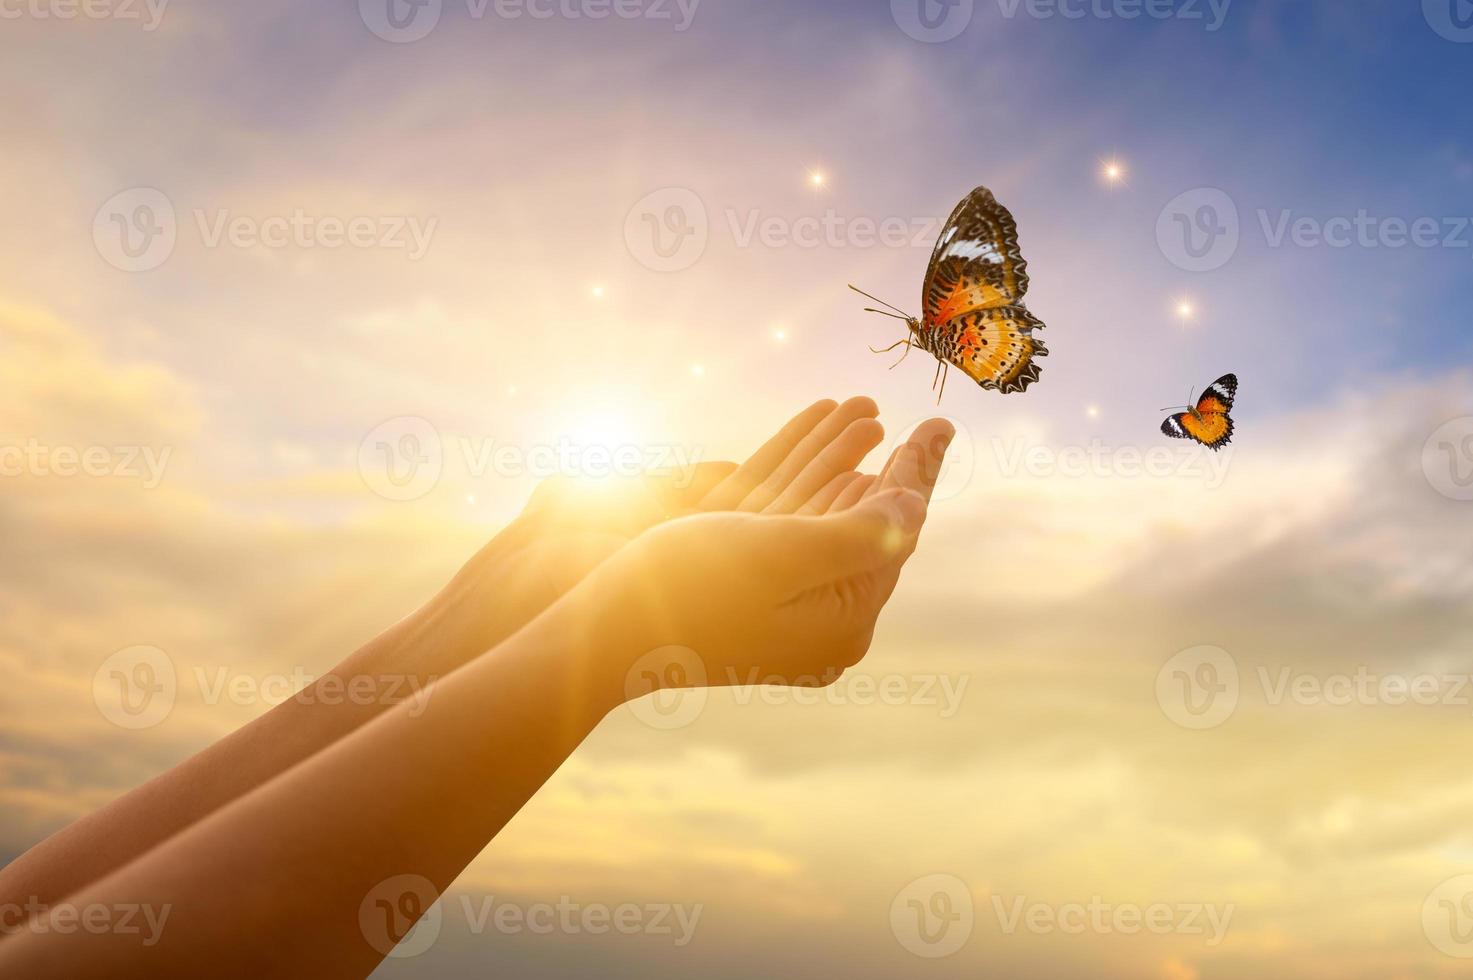 la niña libera a la mariposa del concepto de momento de libertad foto